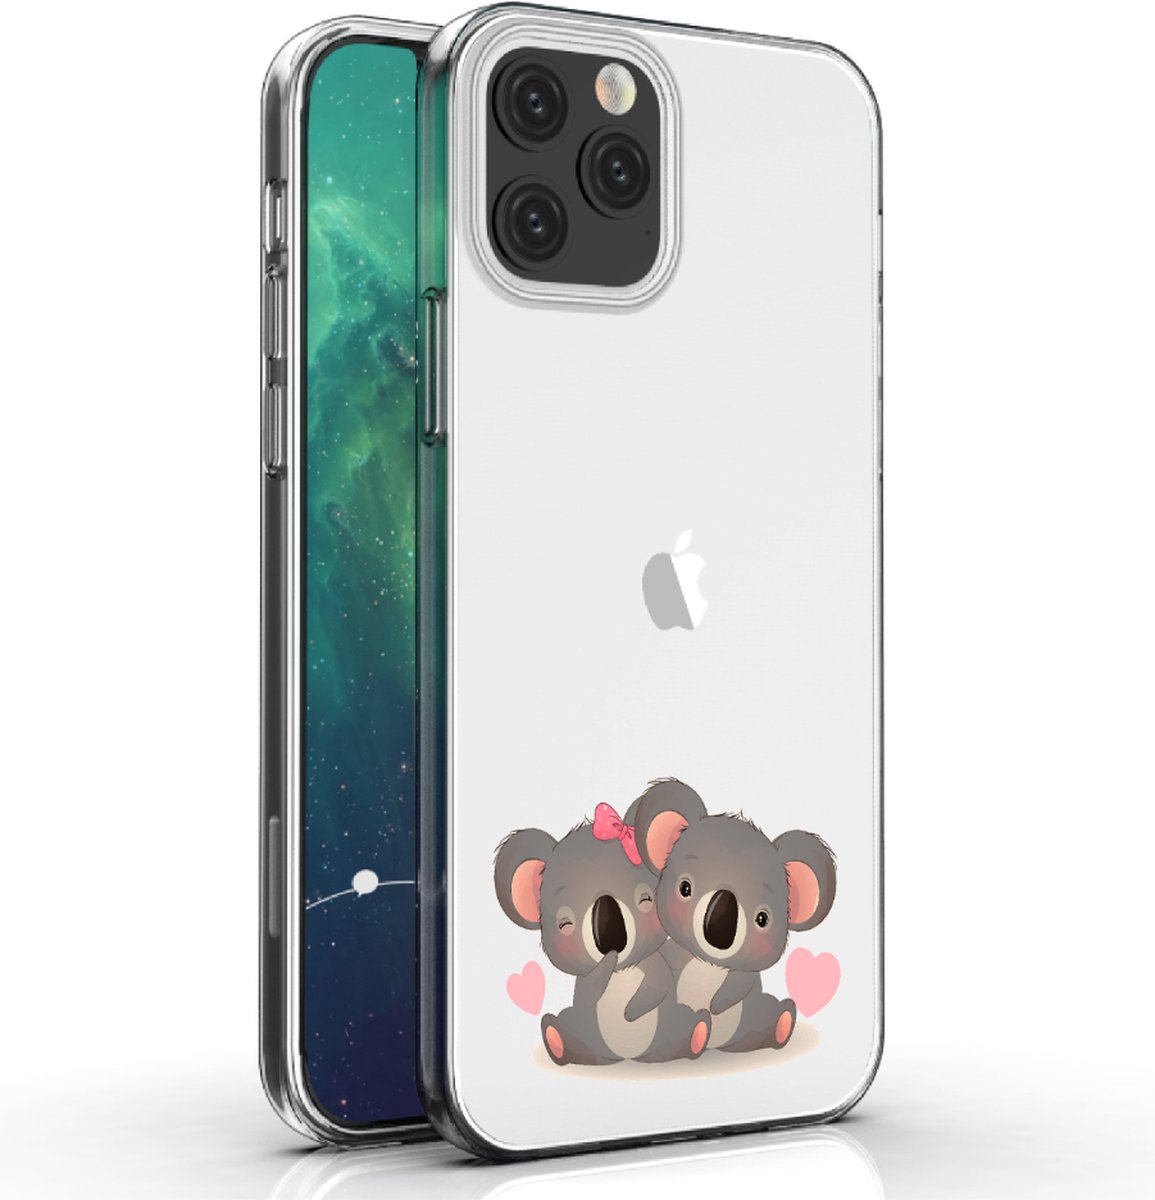 Apple Iphone 12 telefoonhoesje transparant siliconen hoesje - Koalabeertjes